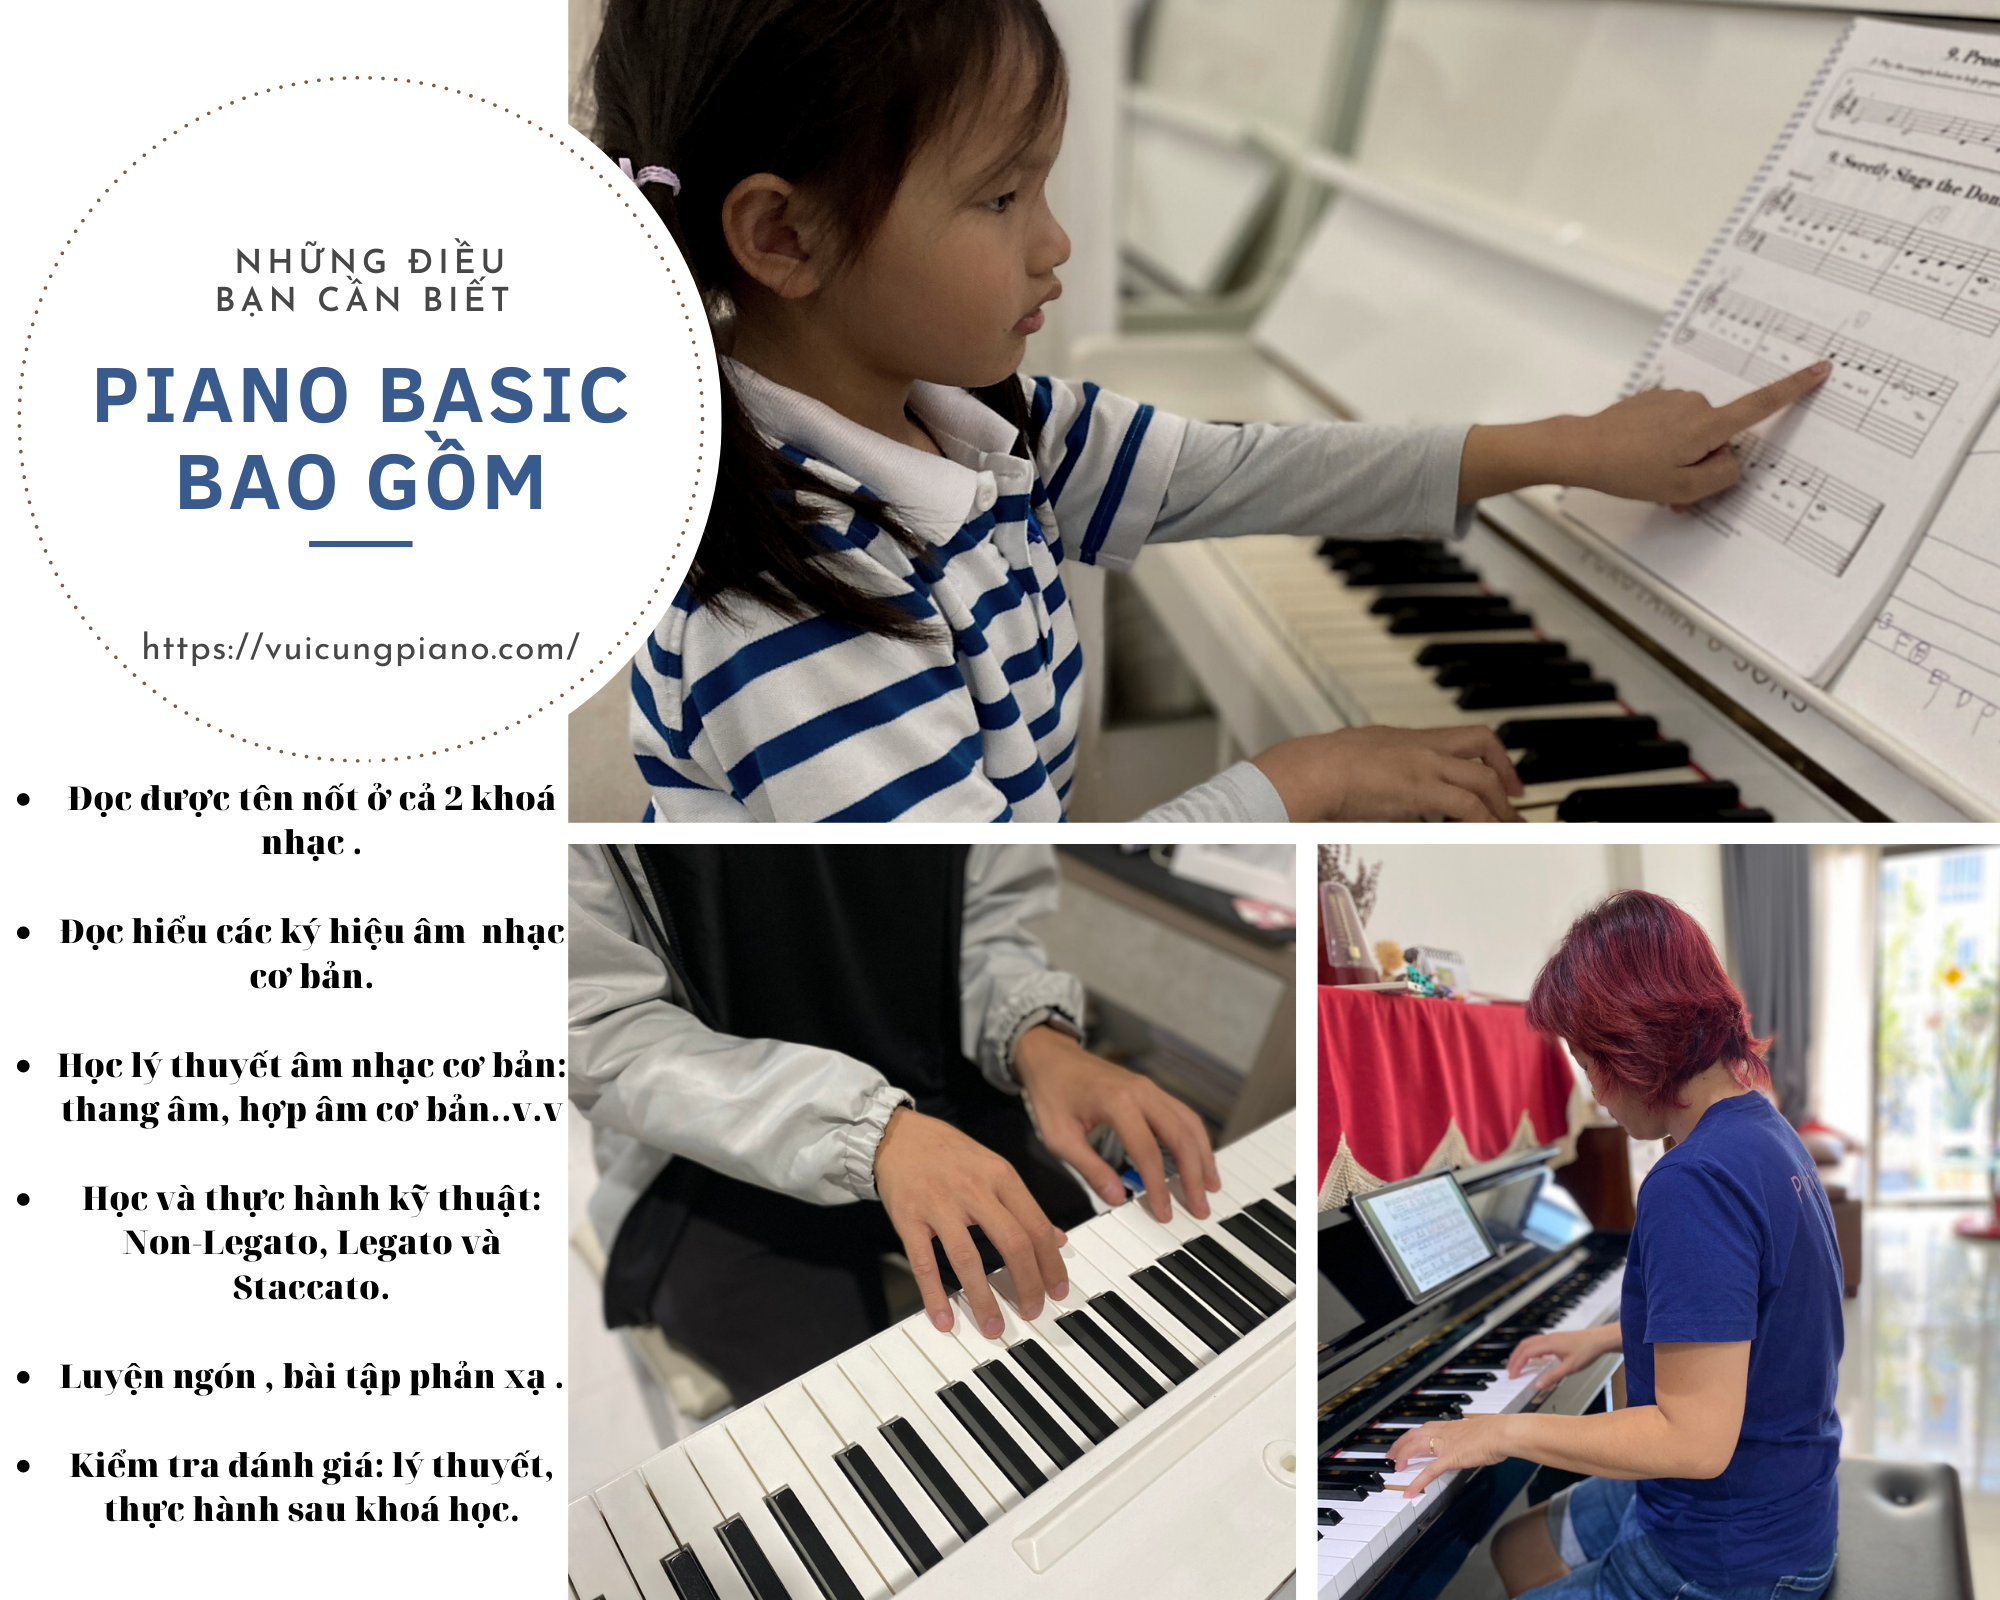 Học piano cho người bắt đầu như thế nào? Khoá học piano basic gồm những nội dung gì? Piano có học online được không?